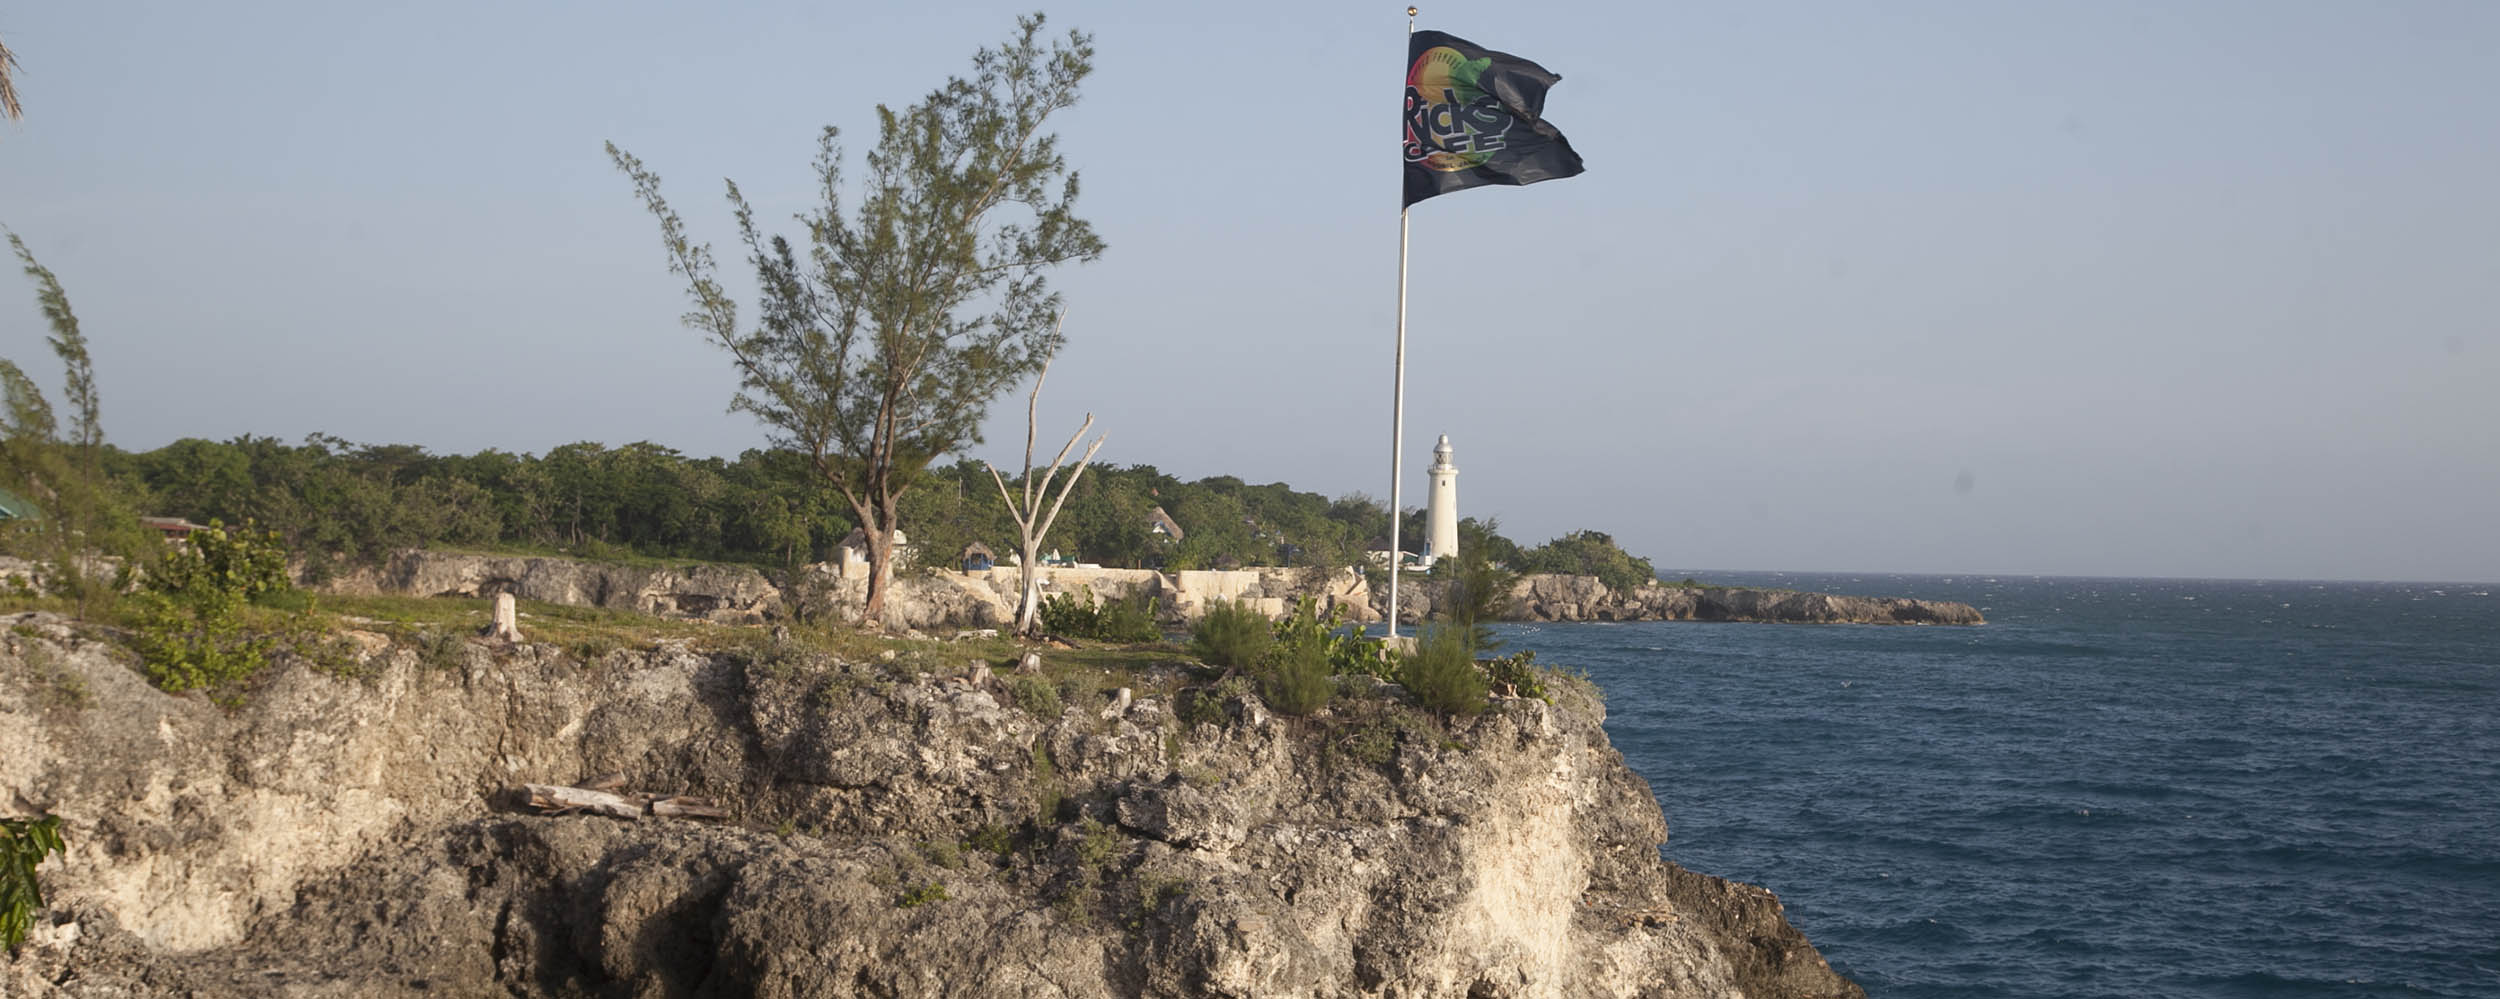 Negril Lighthouse - Rick's Cafe´, West End Cliffs - Negril Jamaica